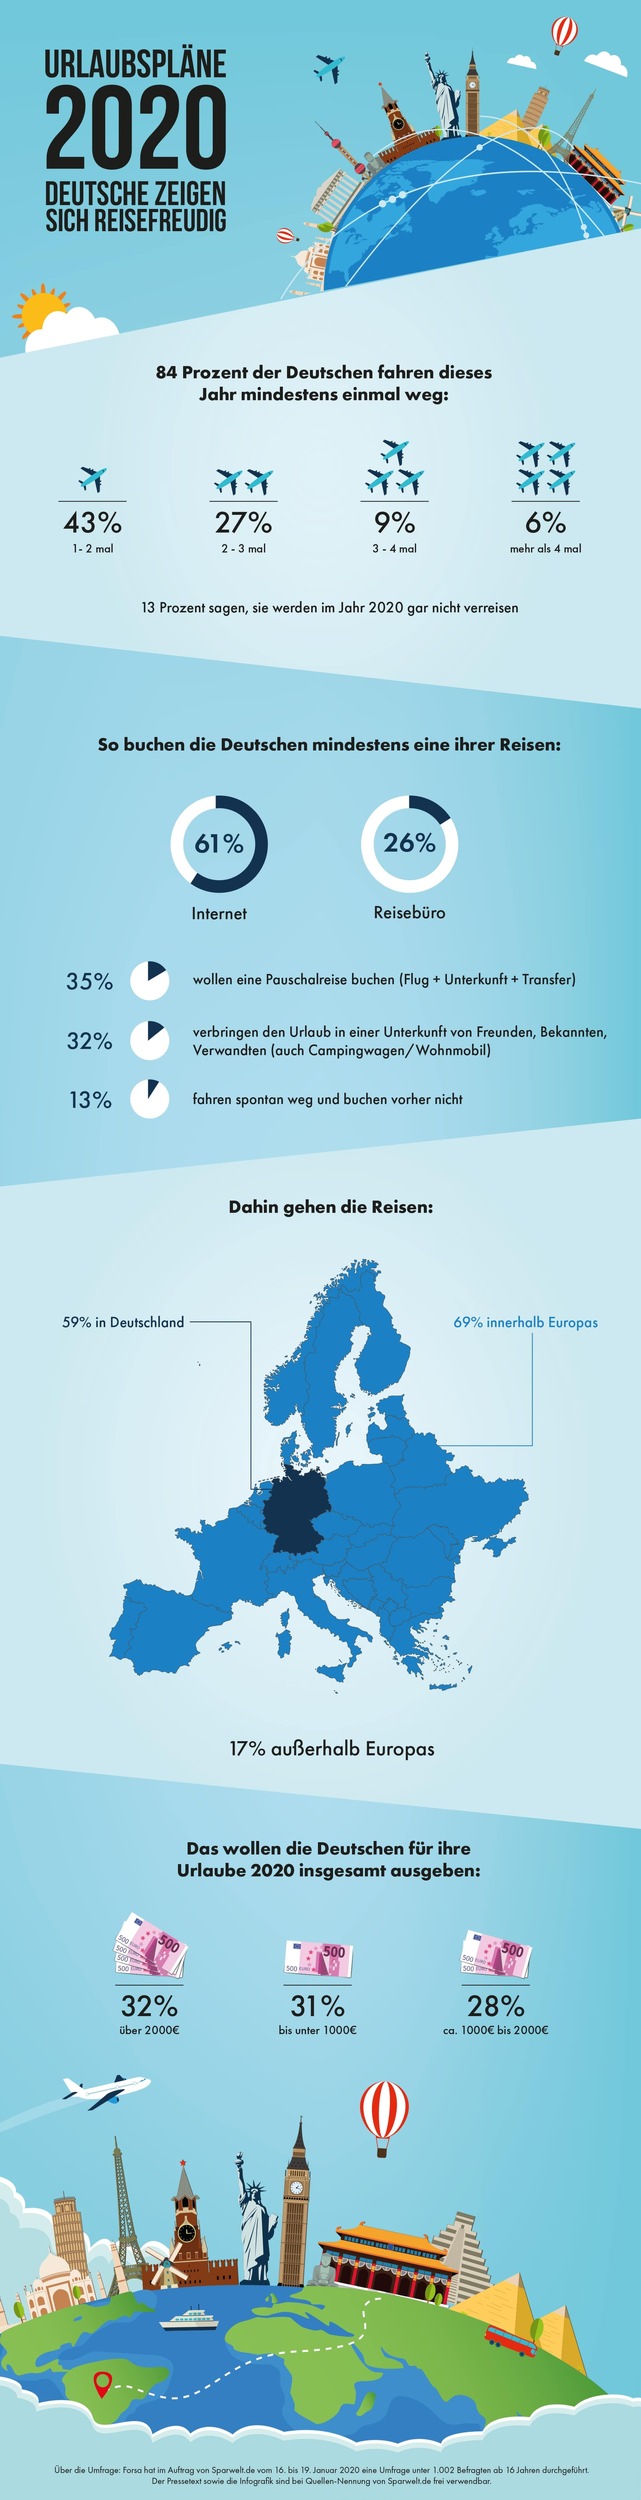 Forsa-Umfrage zu Reisezielen, Planung, Kosten: So urlaubt Deutschland 2020